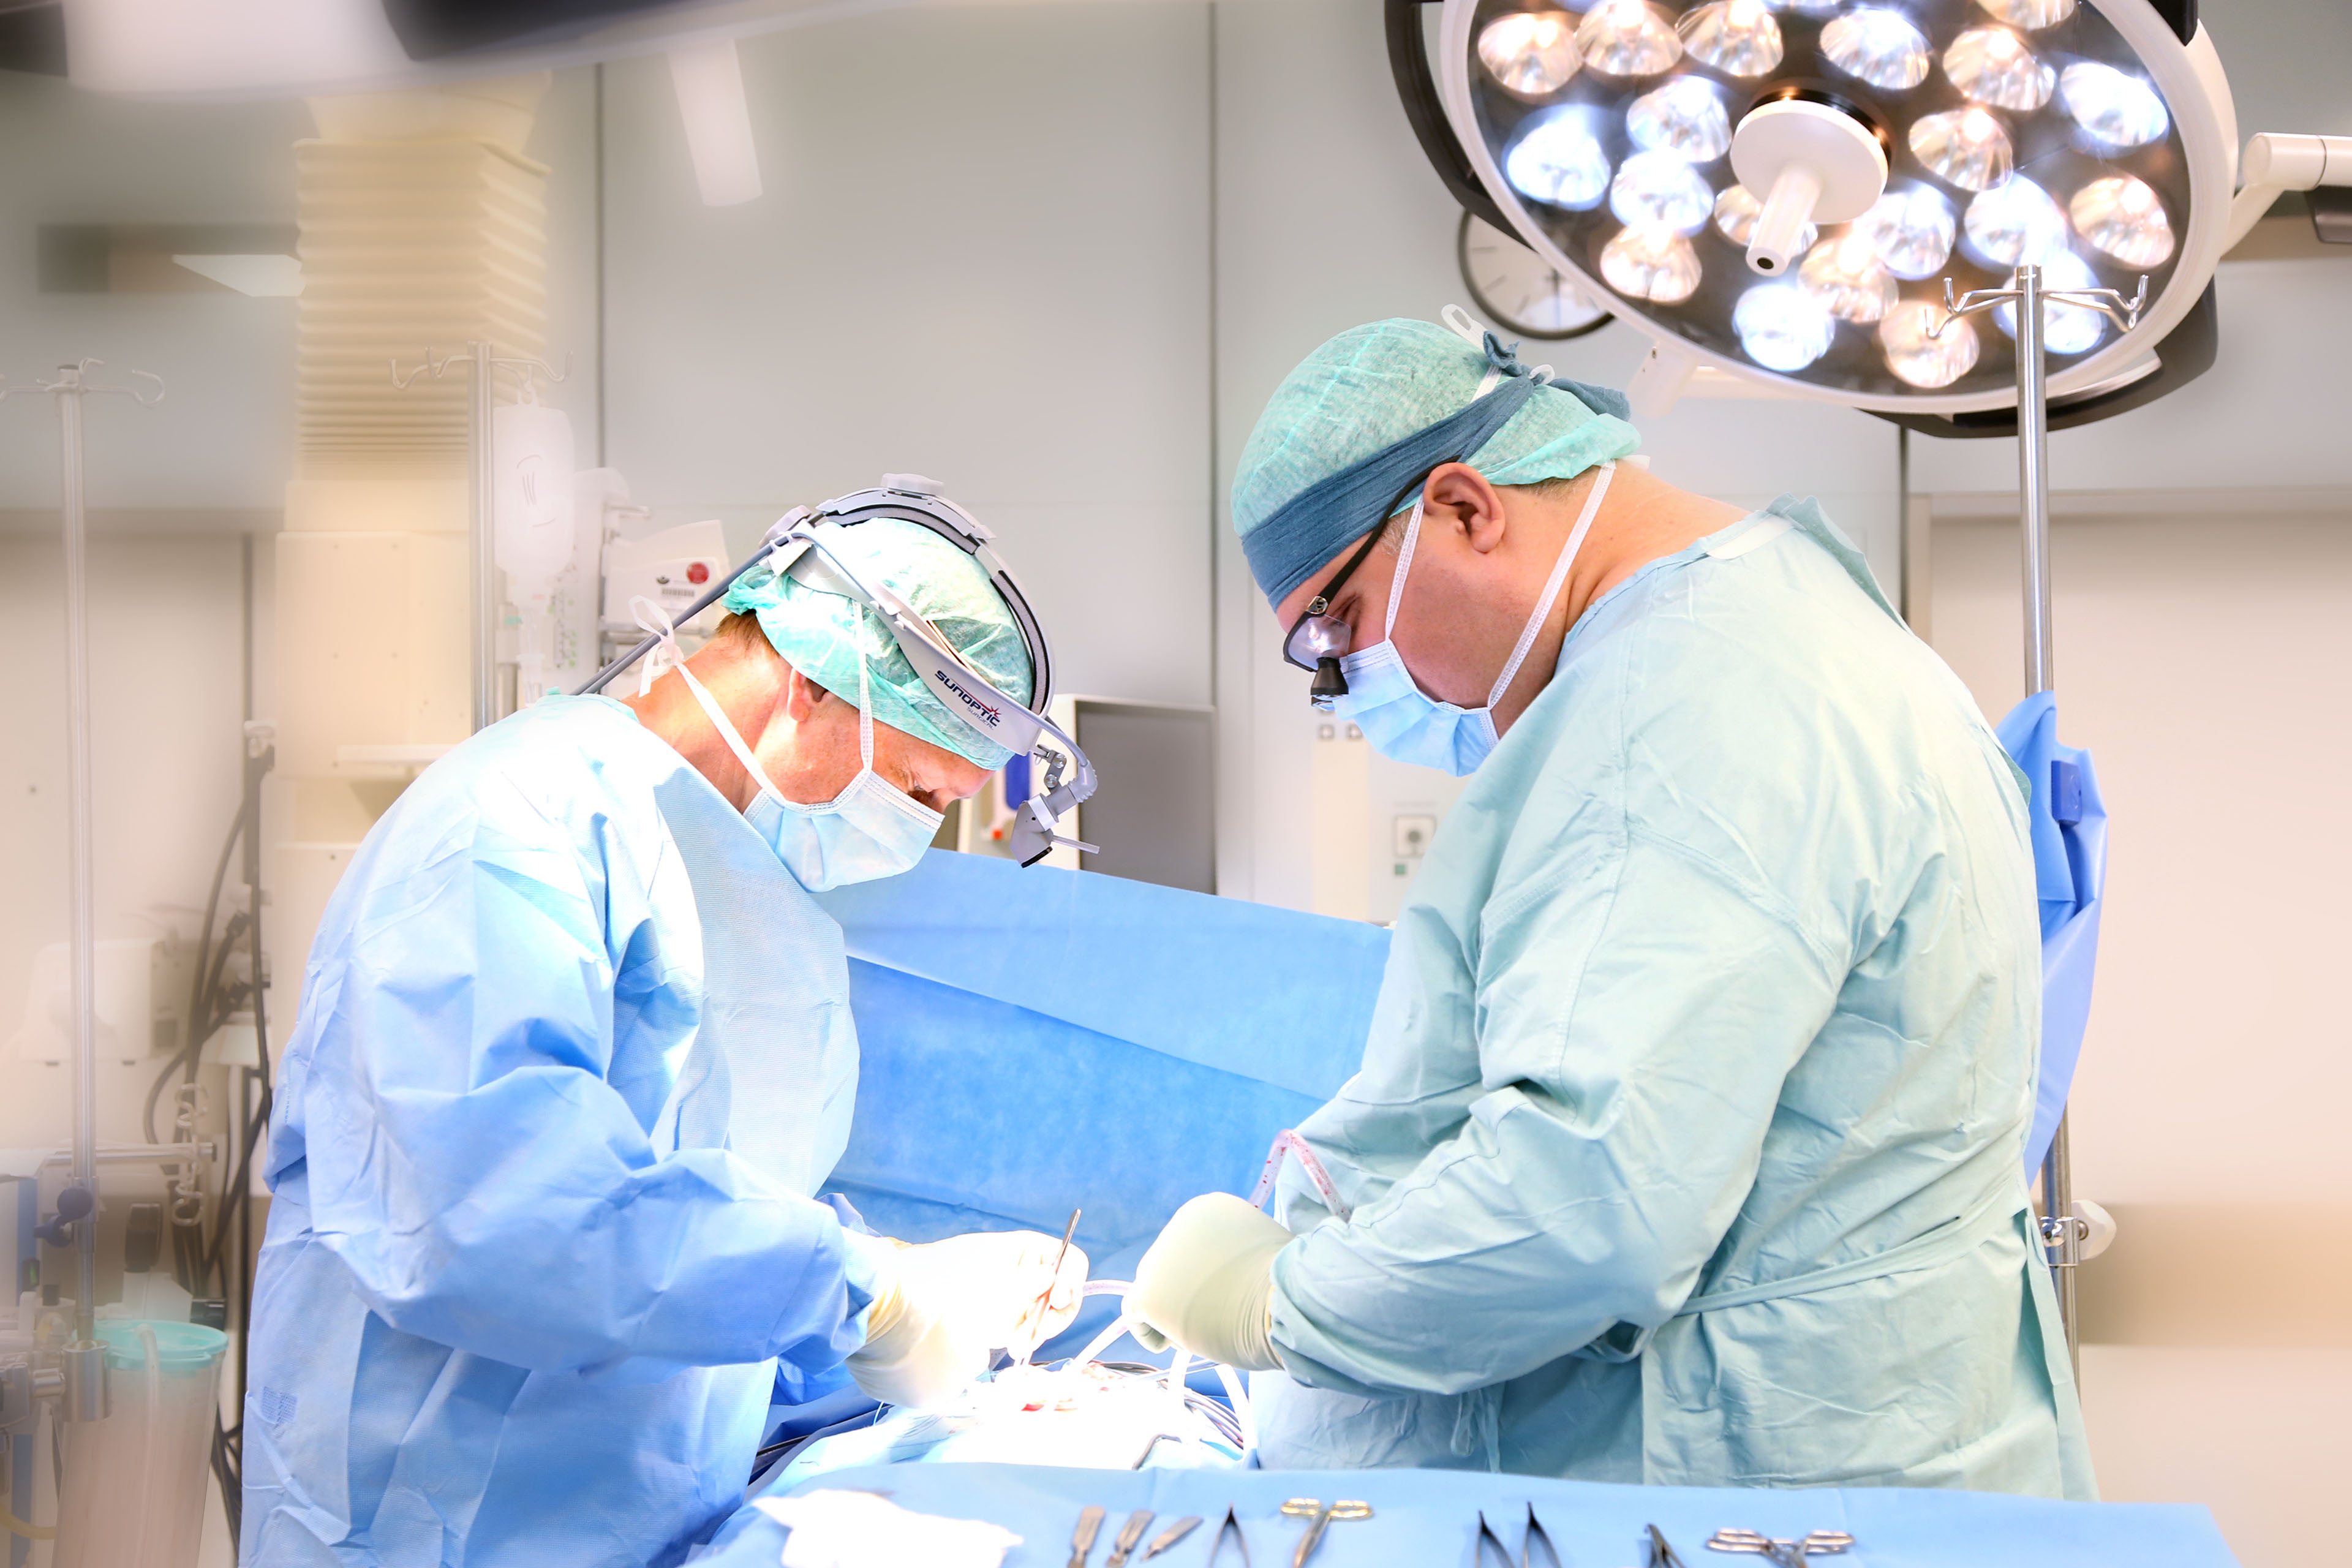 Die Wirbelsäulenchirurgie befasst sich mit der Behandlung von Erkrankungen und Verletzungen der gesamten Wirbelsäule und einzelner Wirbel, wie etwa der Halswirbel.